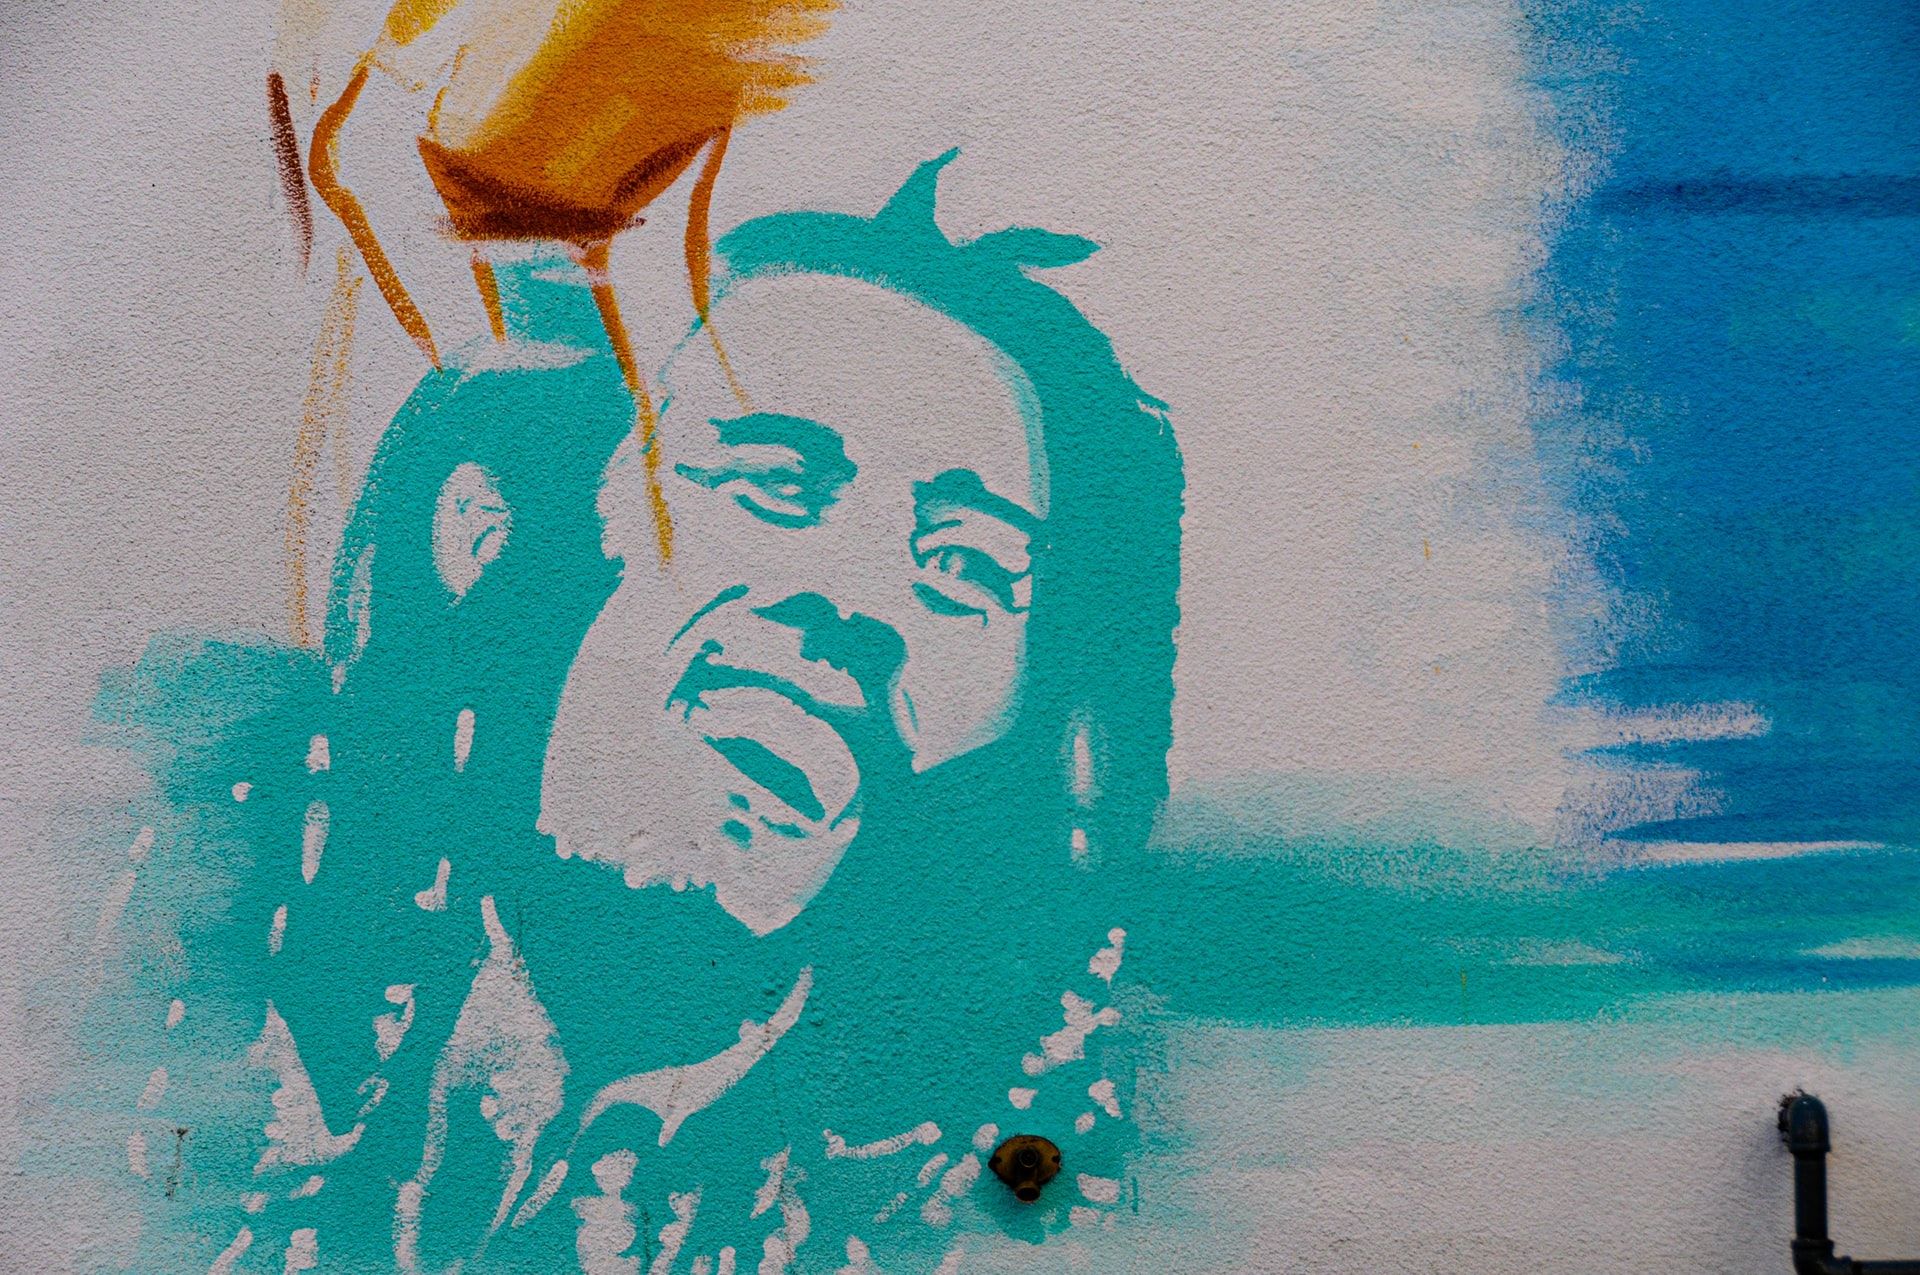 Gambar mural Bob Marley di Calgary Alberta Canada.